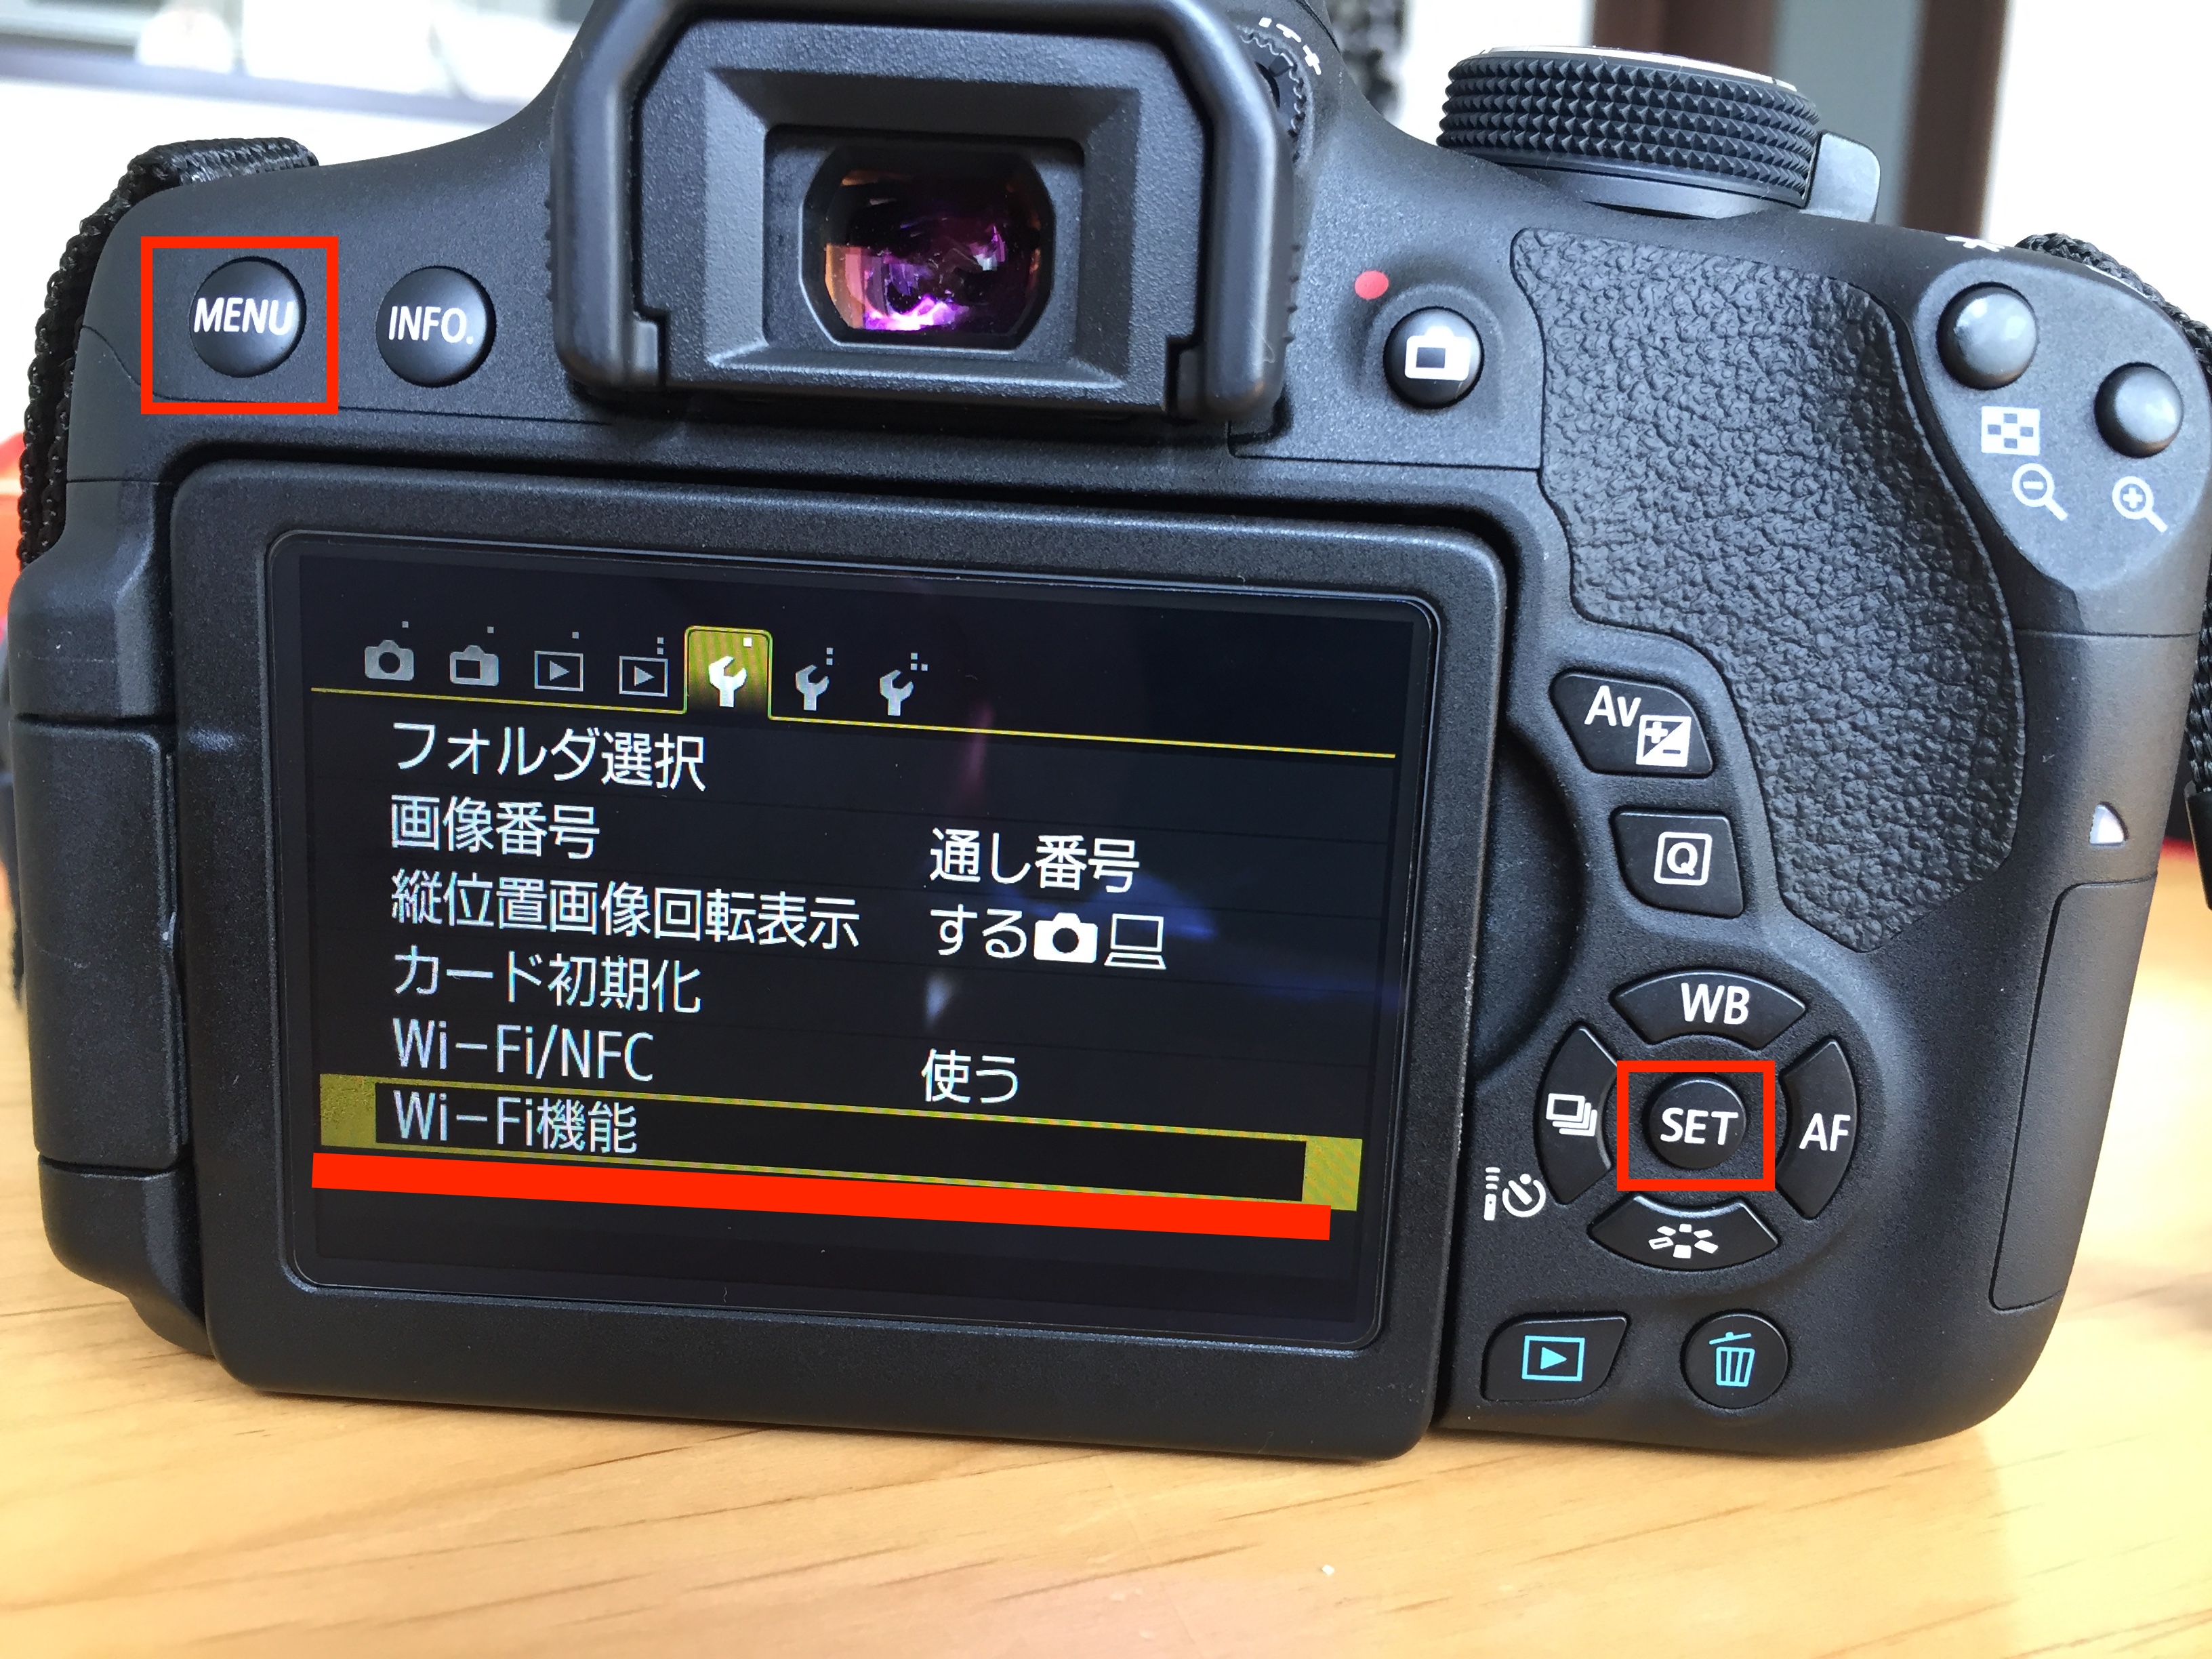 ネット販売品  X8i　※WiFi機能搭載 maybeeee14様専用キャノンのKiss デジタルカメラ